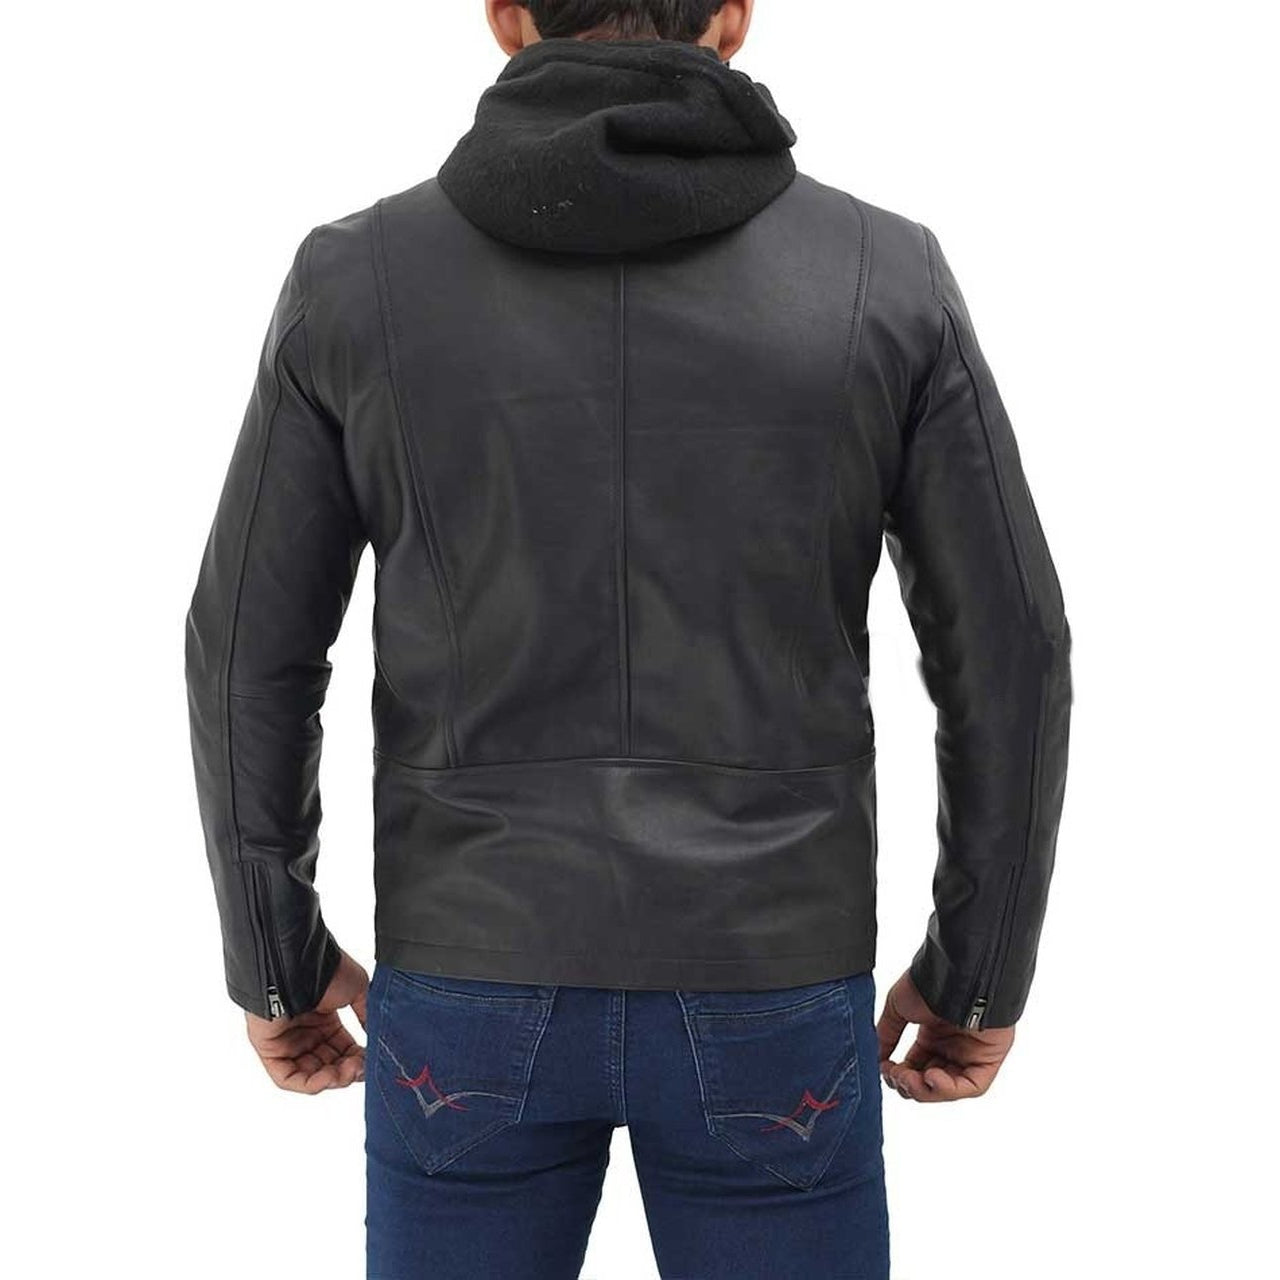 Black Bomber Hooded Leather Jacket - Leather Jacket